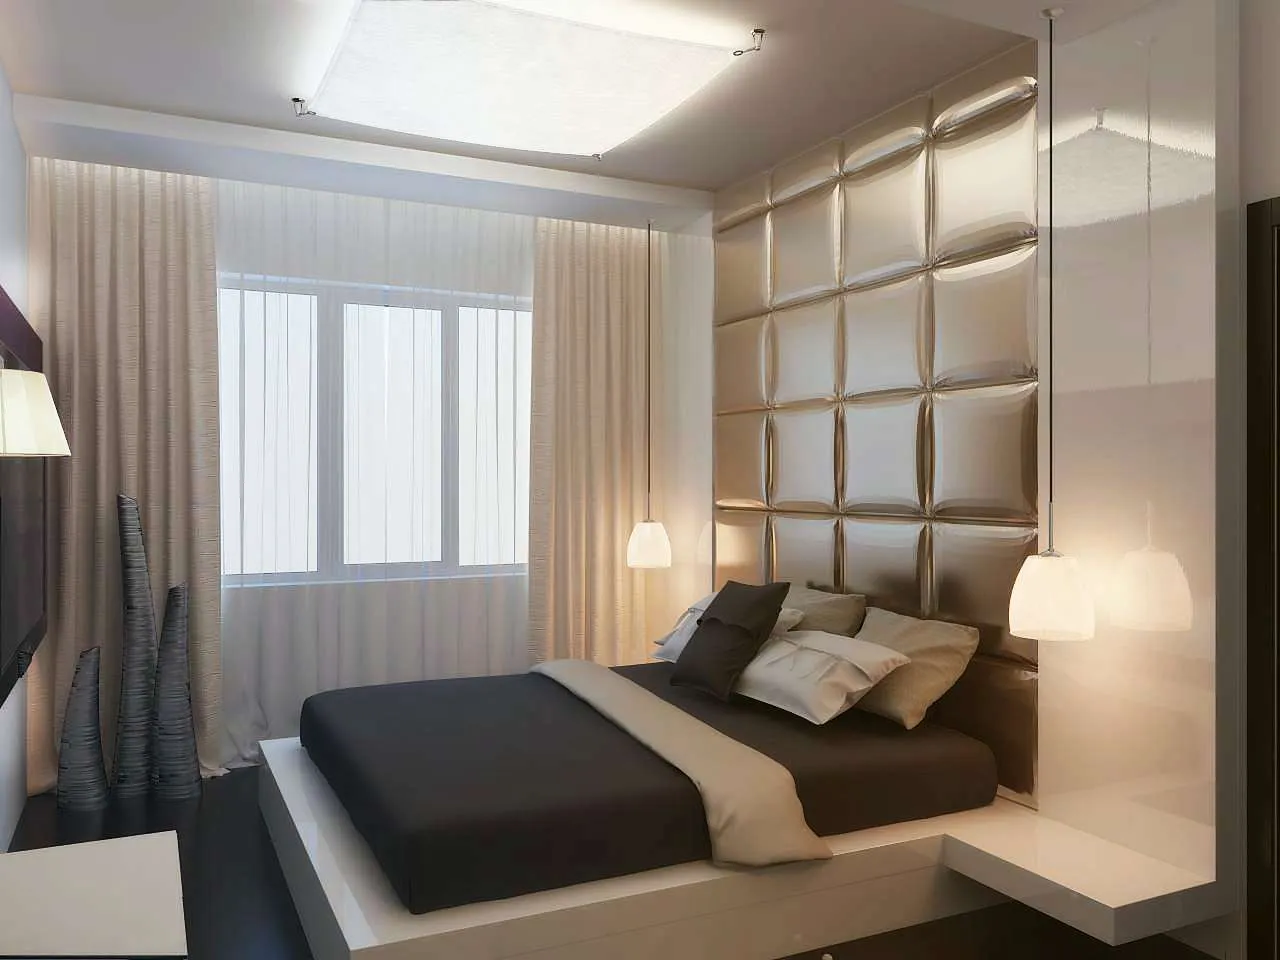 Дизайн интерьера спальни: 60 готовых проектов для ремонта г. Санкт-Петербург